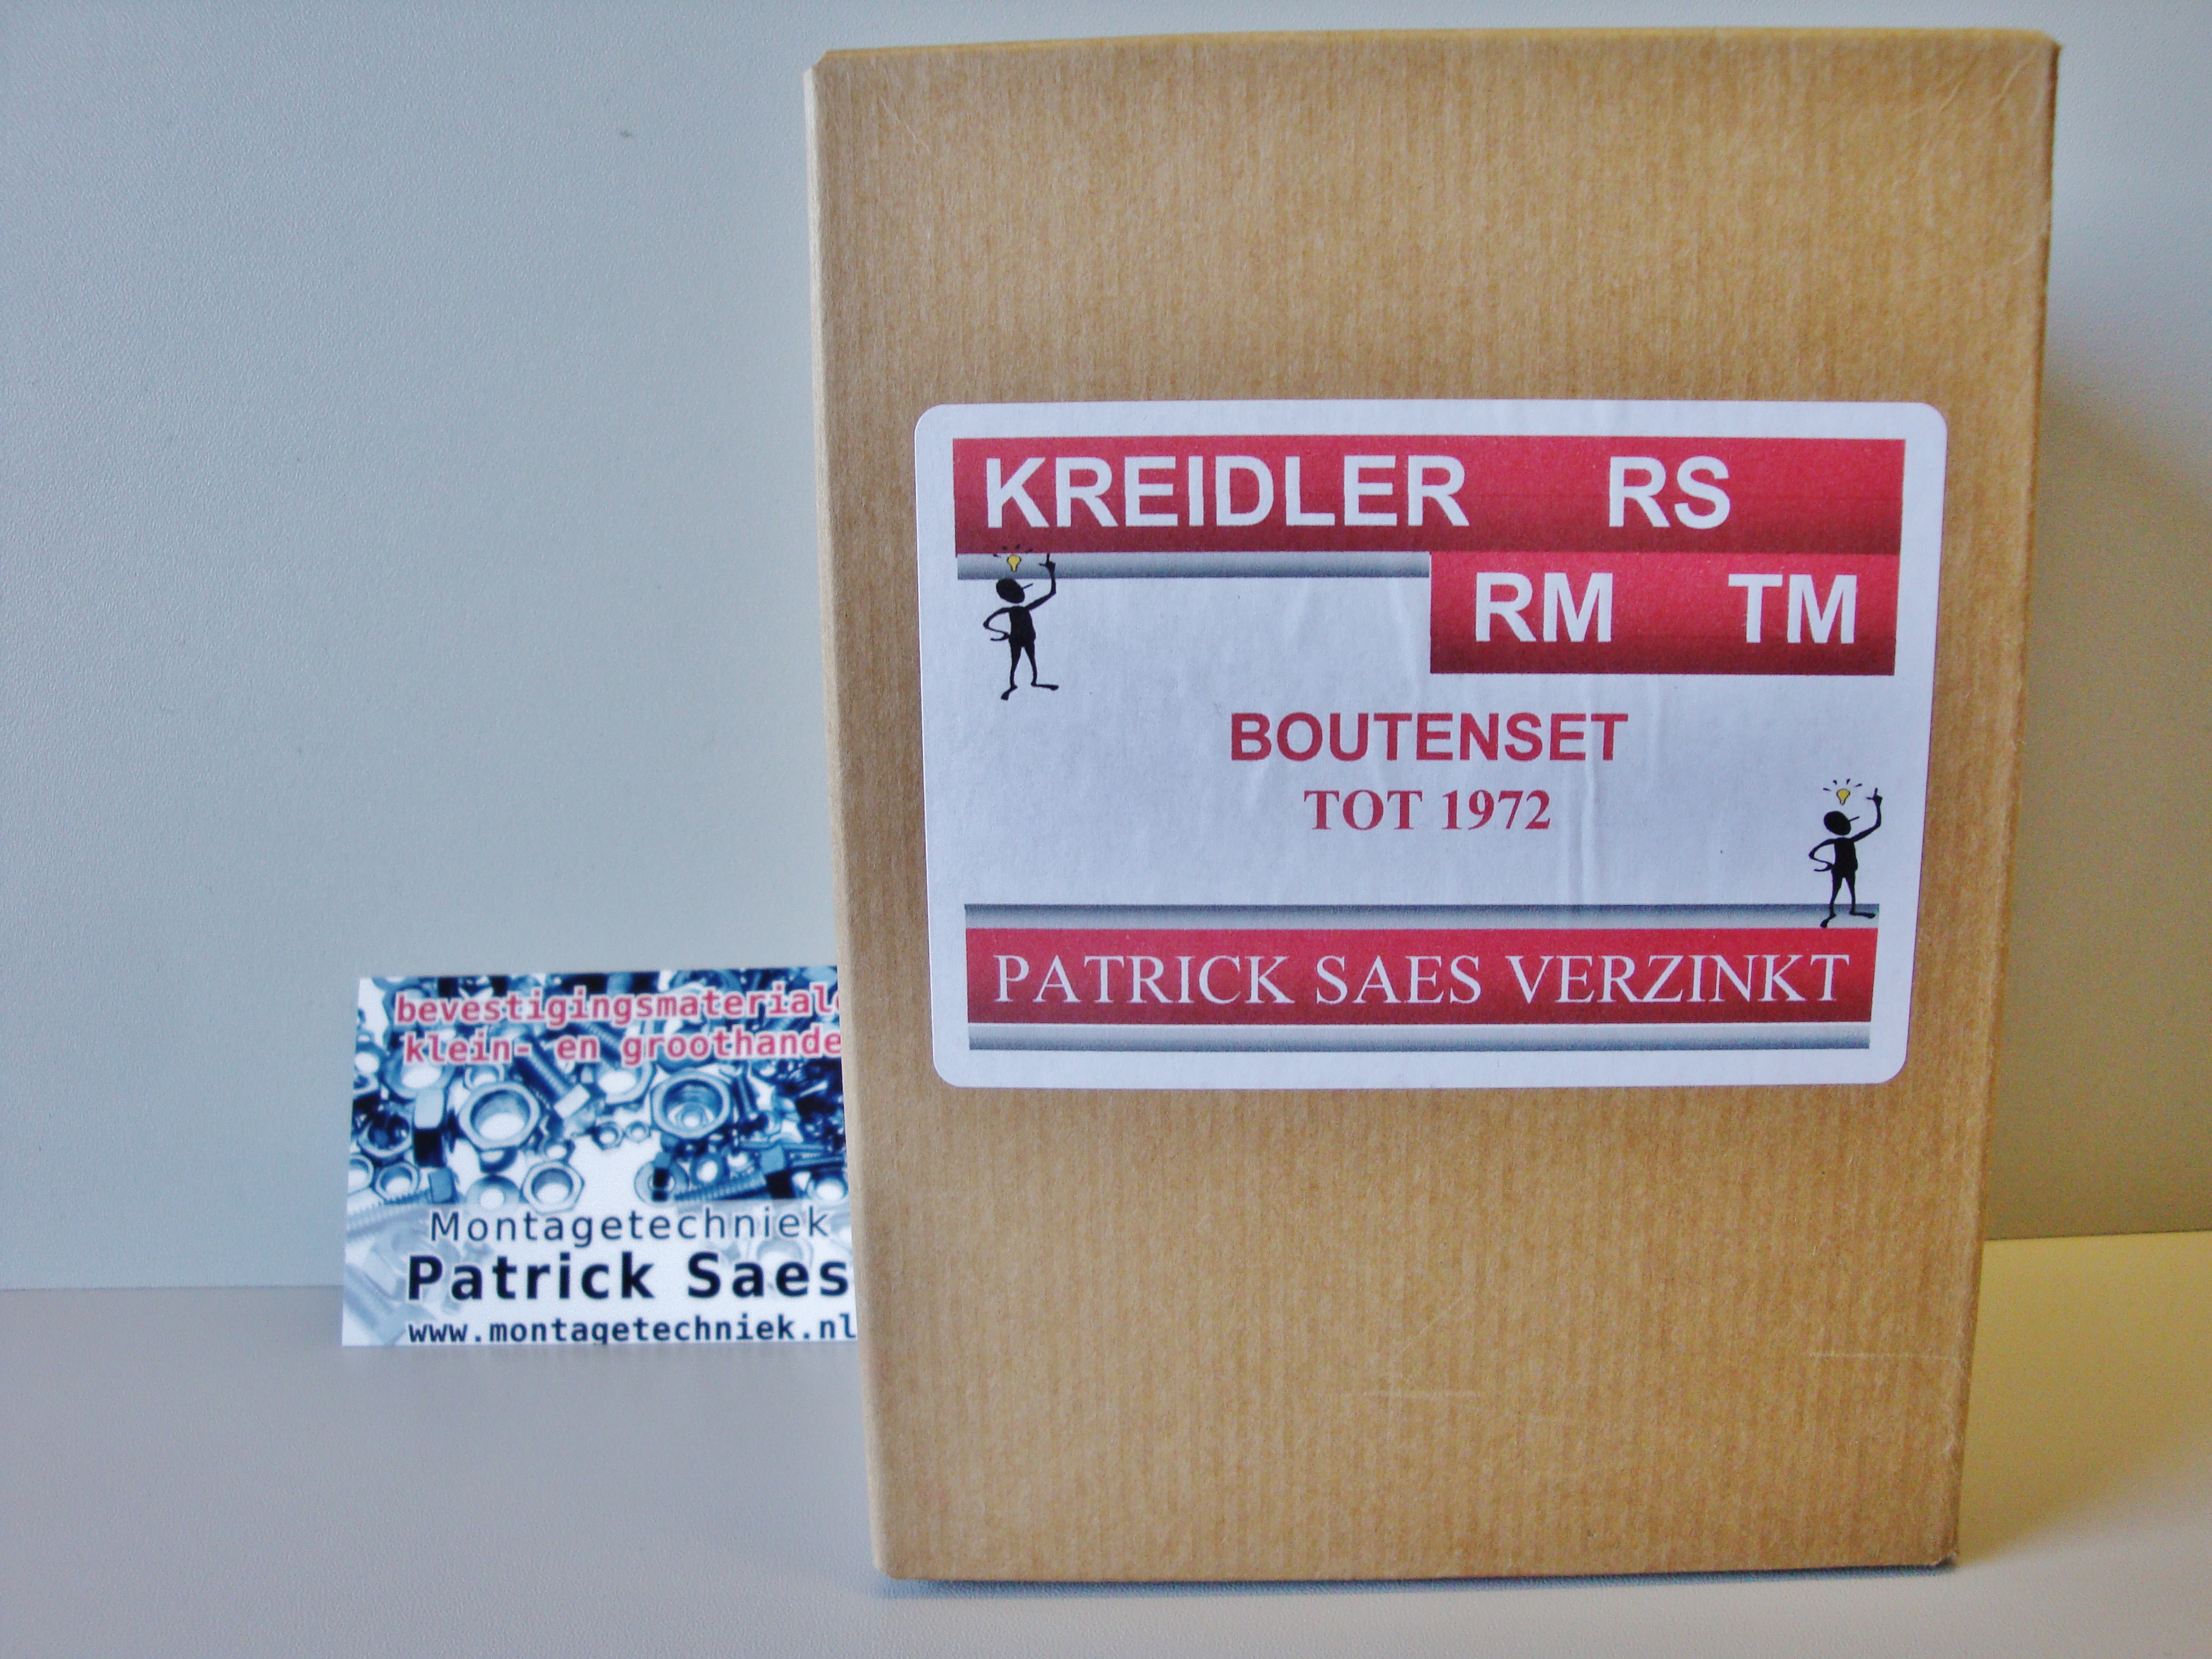 Verzinkte boutenset Kreidler rs / rm / tm tot 1972